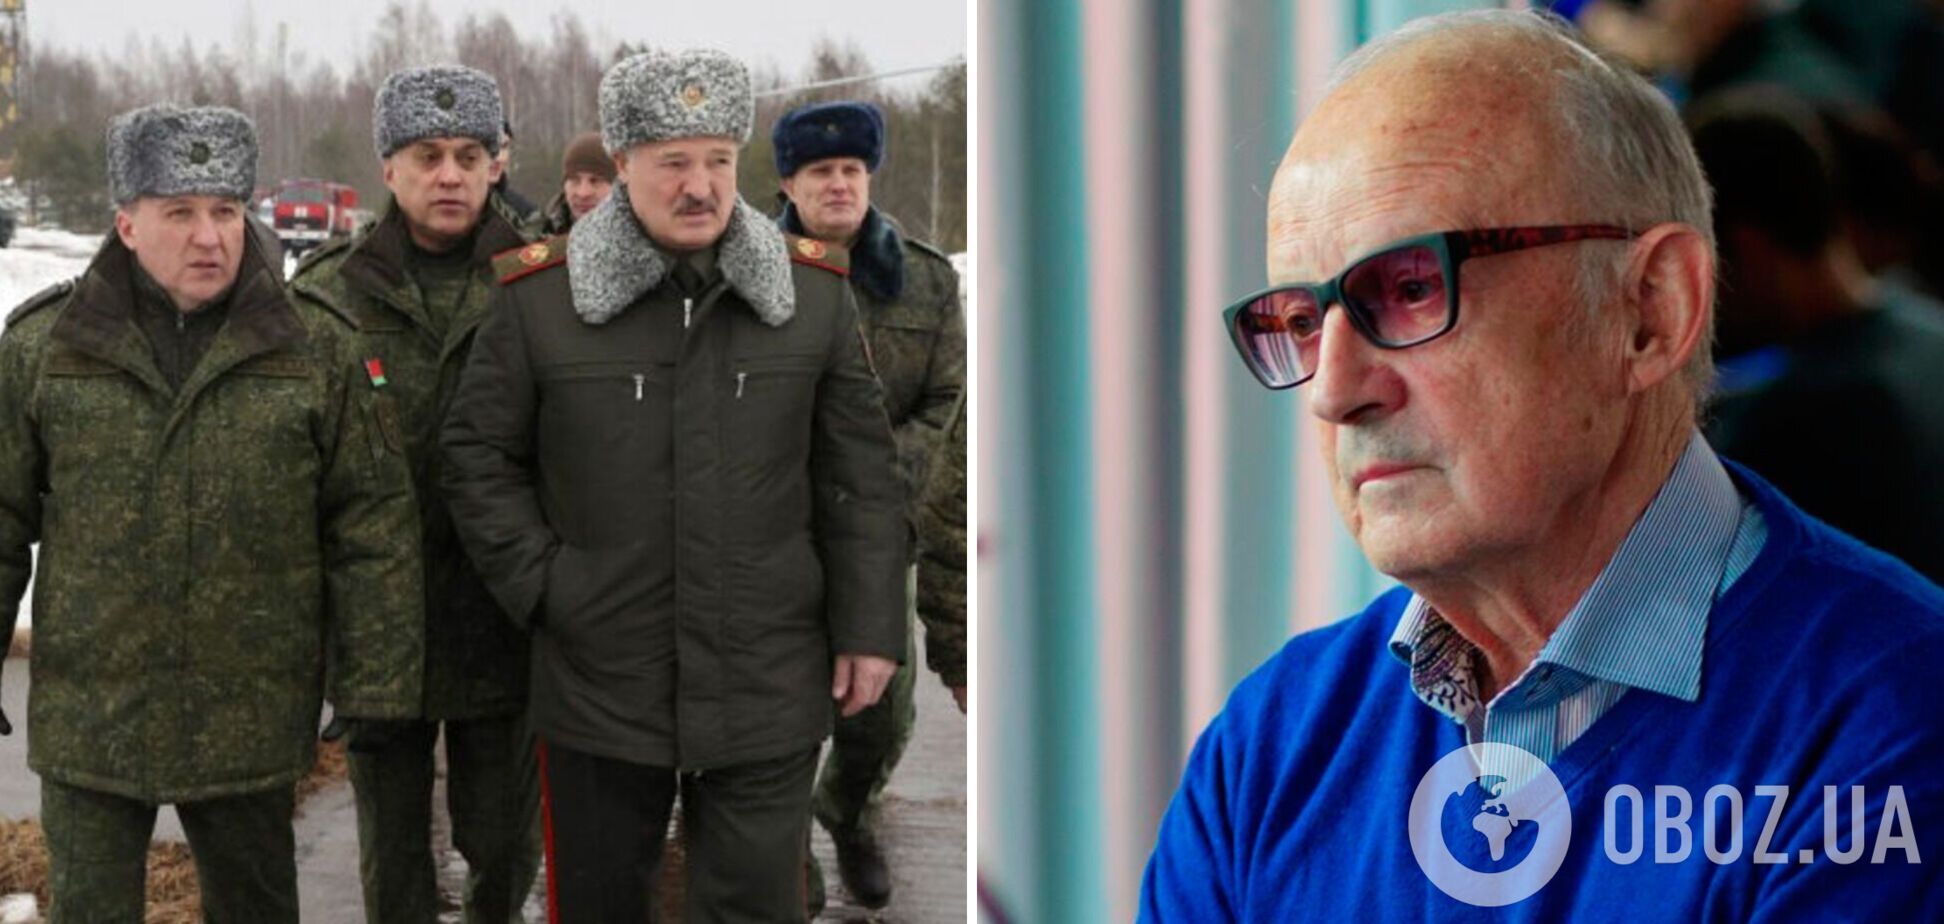 Лукашенко боится своей армии, поэтому противится участию в войне, считает Пионтковский